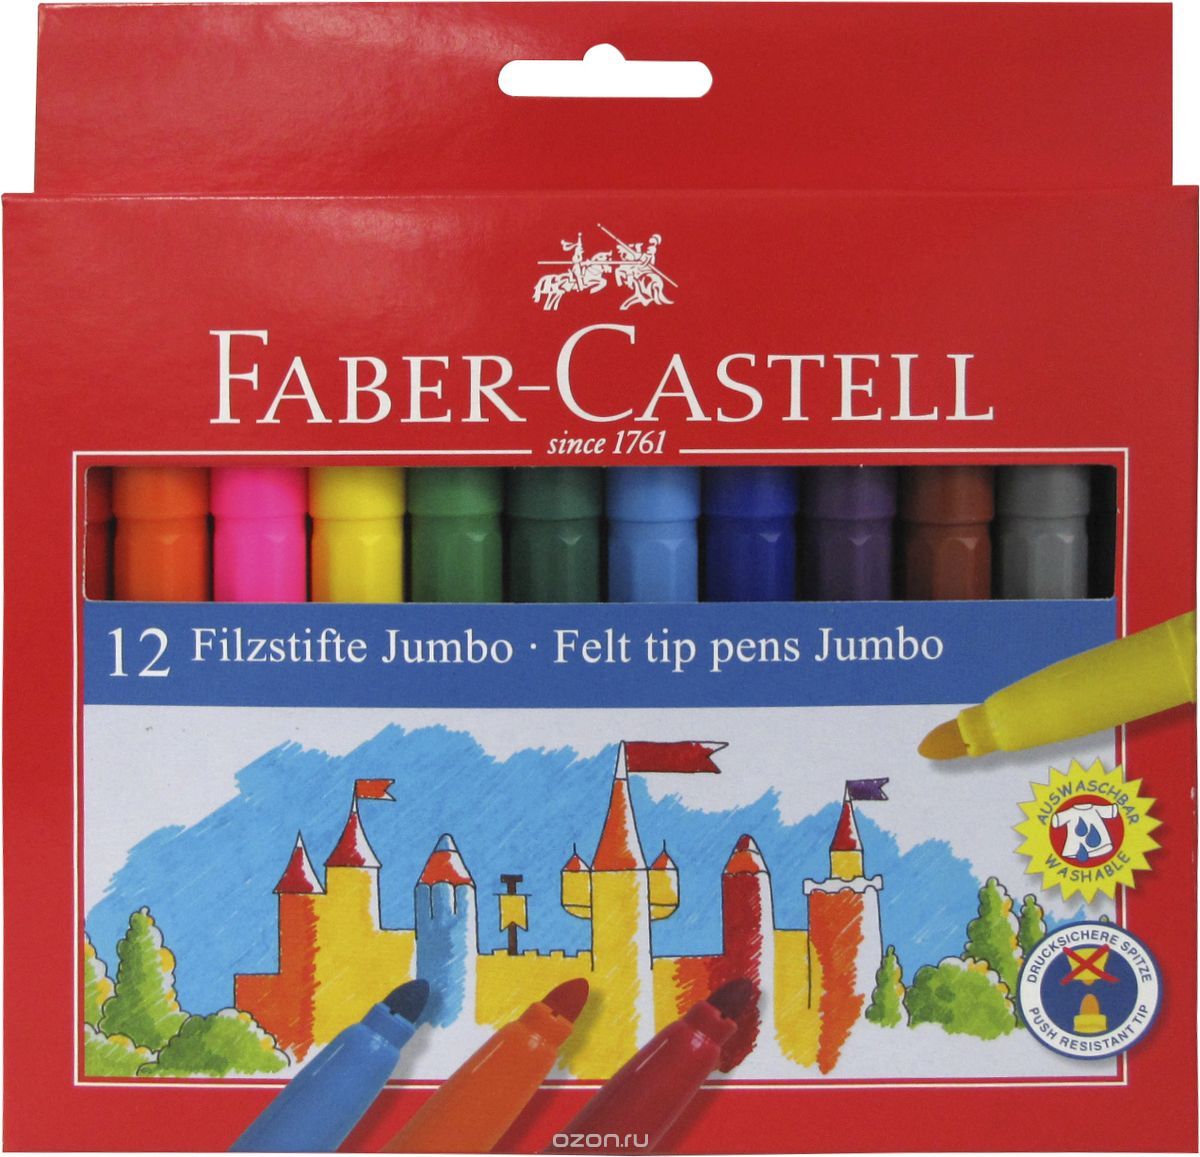 Faber-Castell  Jumbo 12 